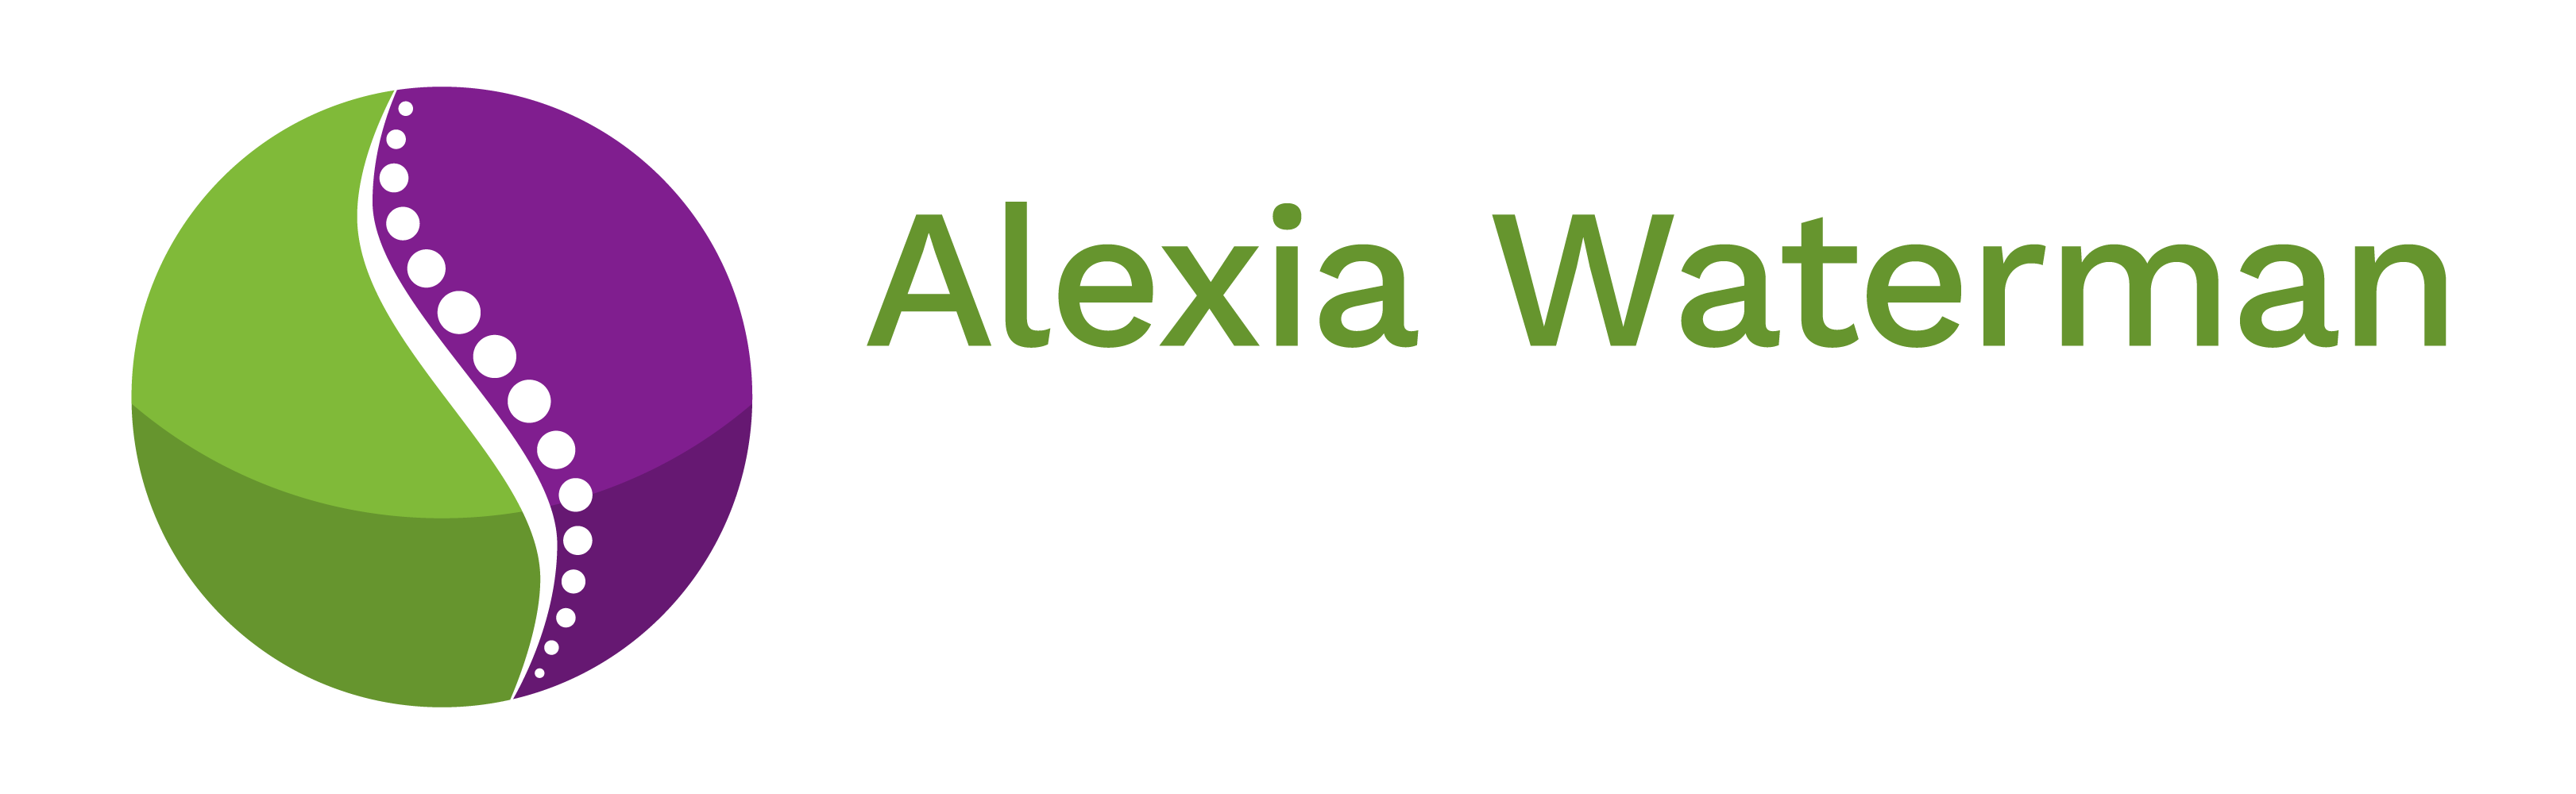 Alexia Waterman Ostéopathe